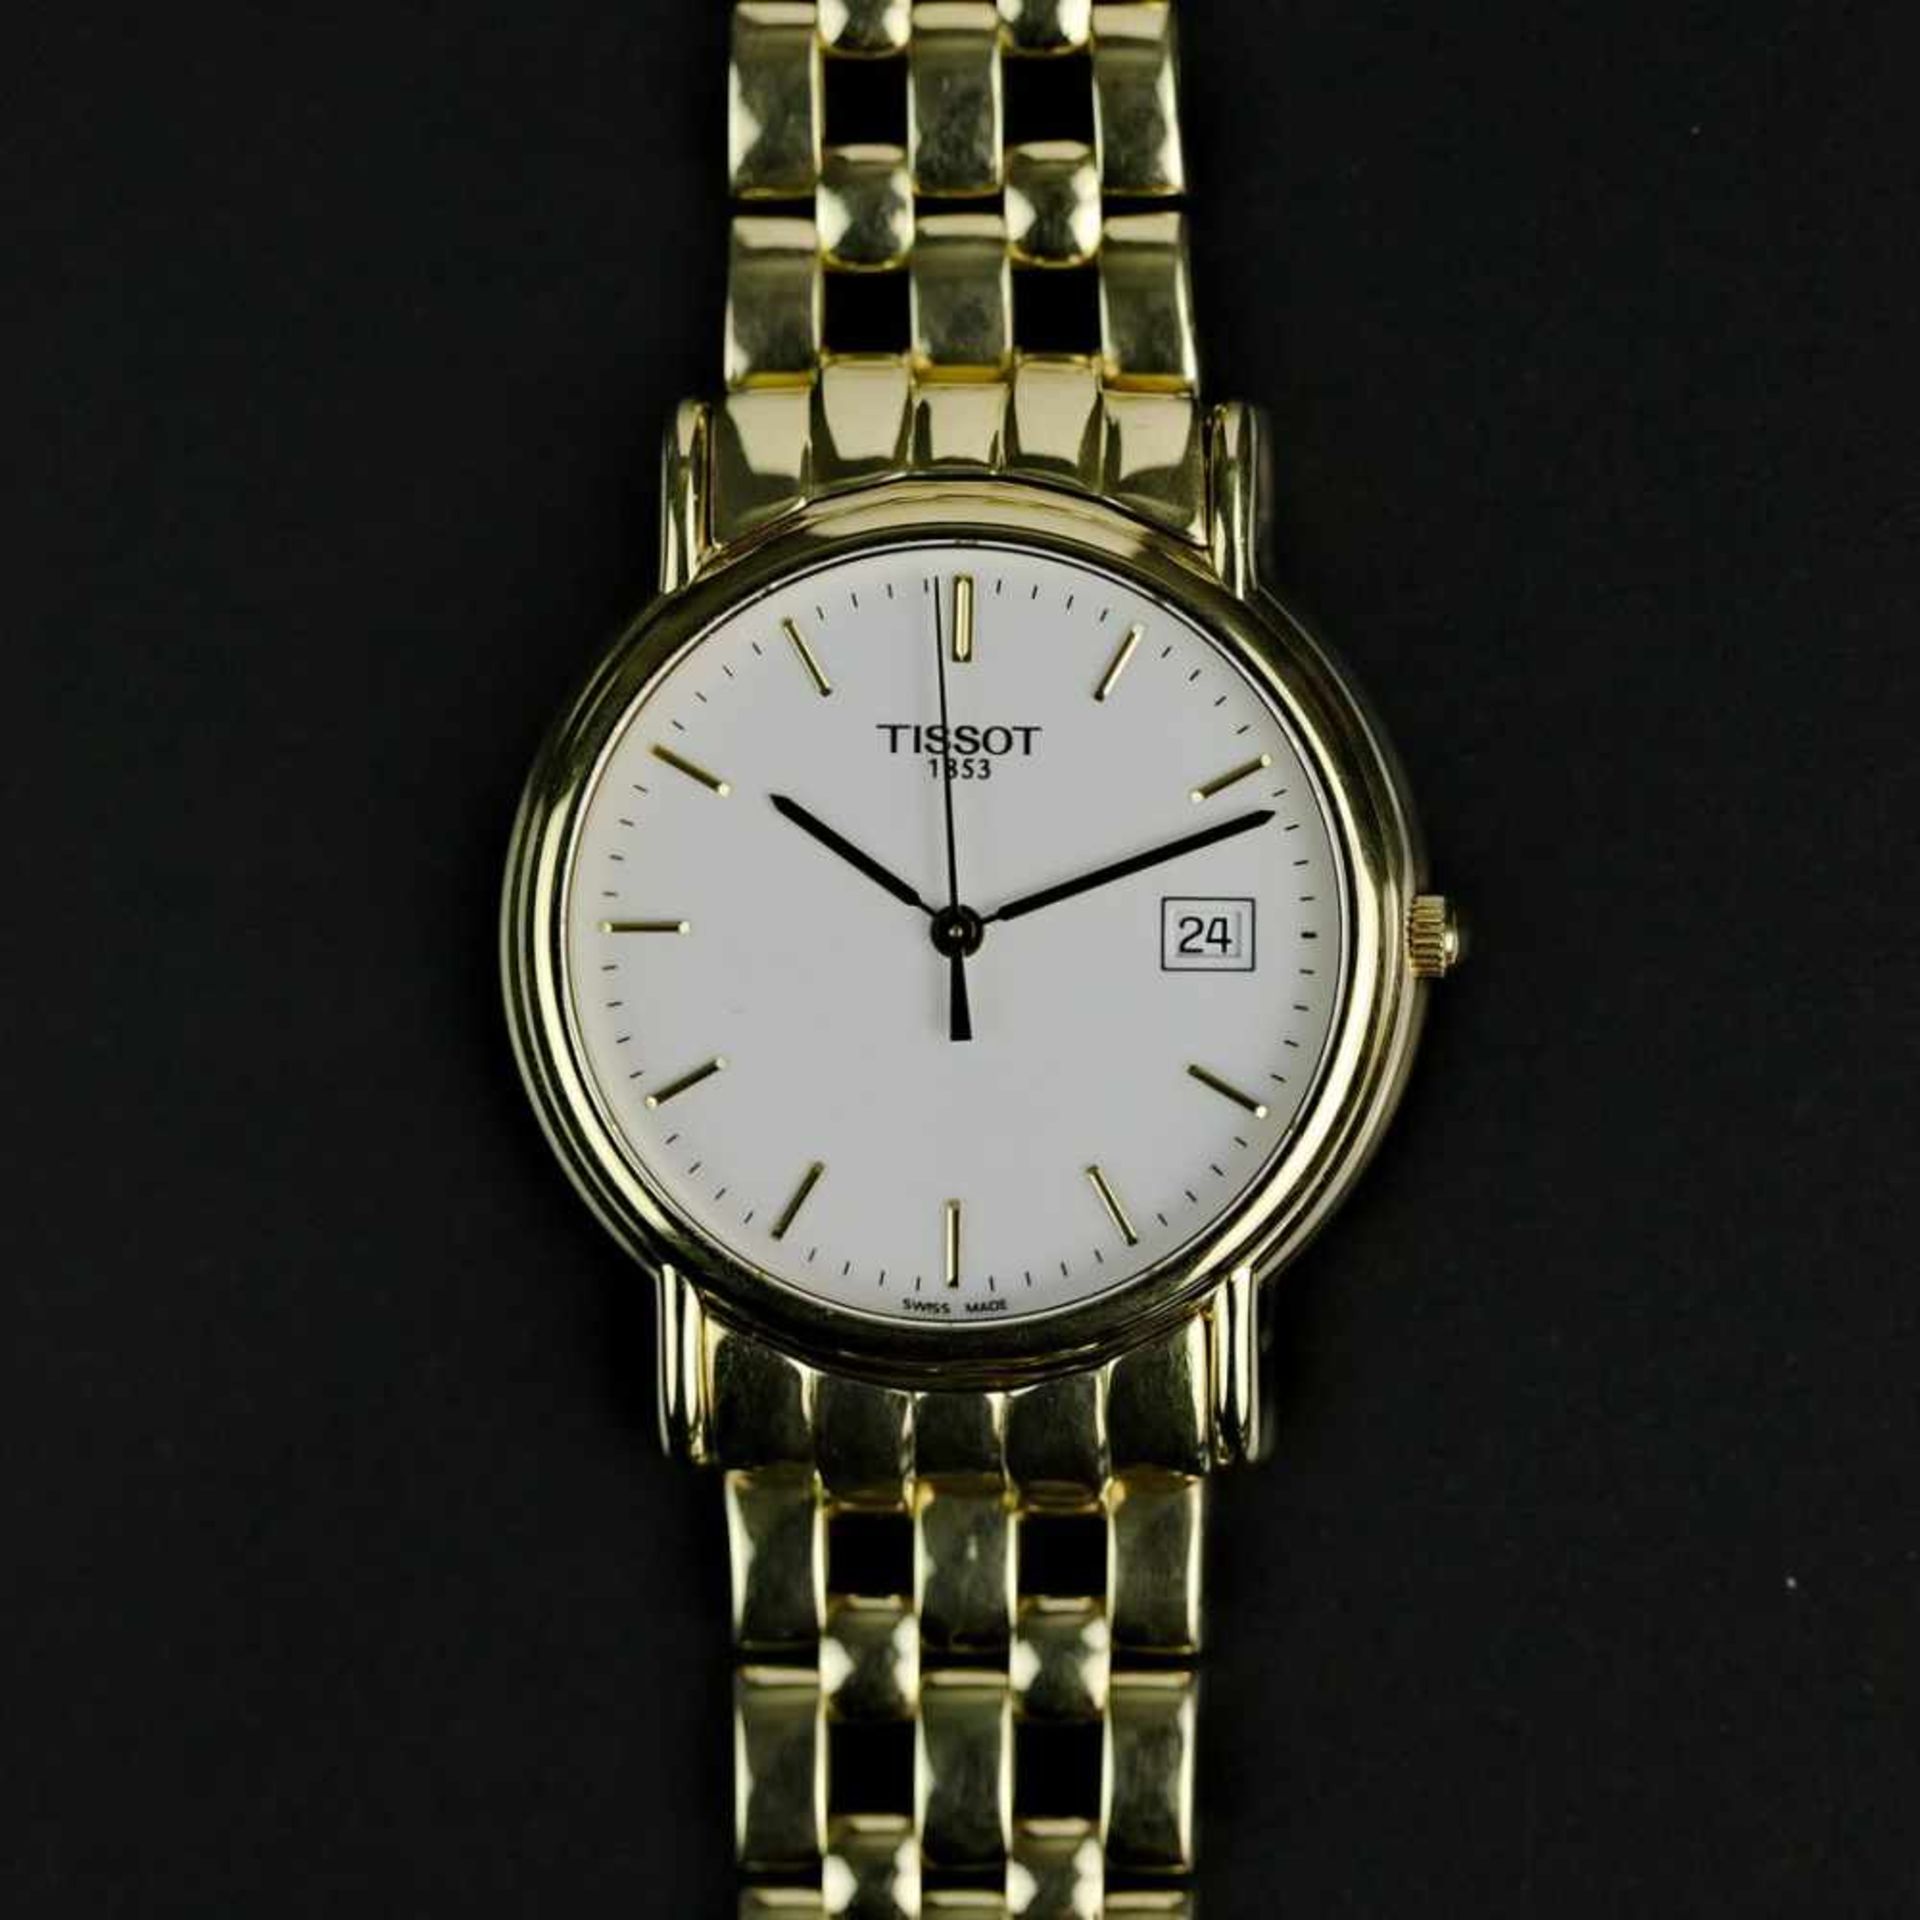 Herrenarmband-Uhr, Tissot / Schweiz, Gelb-Gold 750 / 18 Karat, neuwertig, wohl ungetragen.Punziert - Bild 2 aus 2